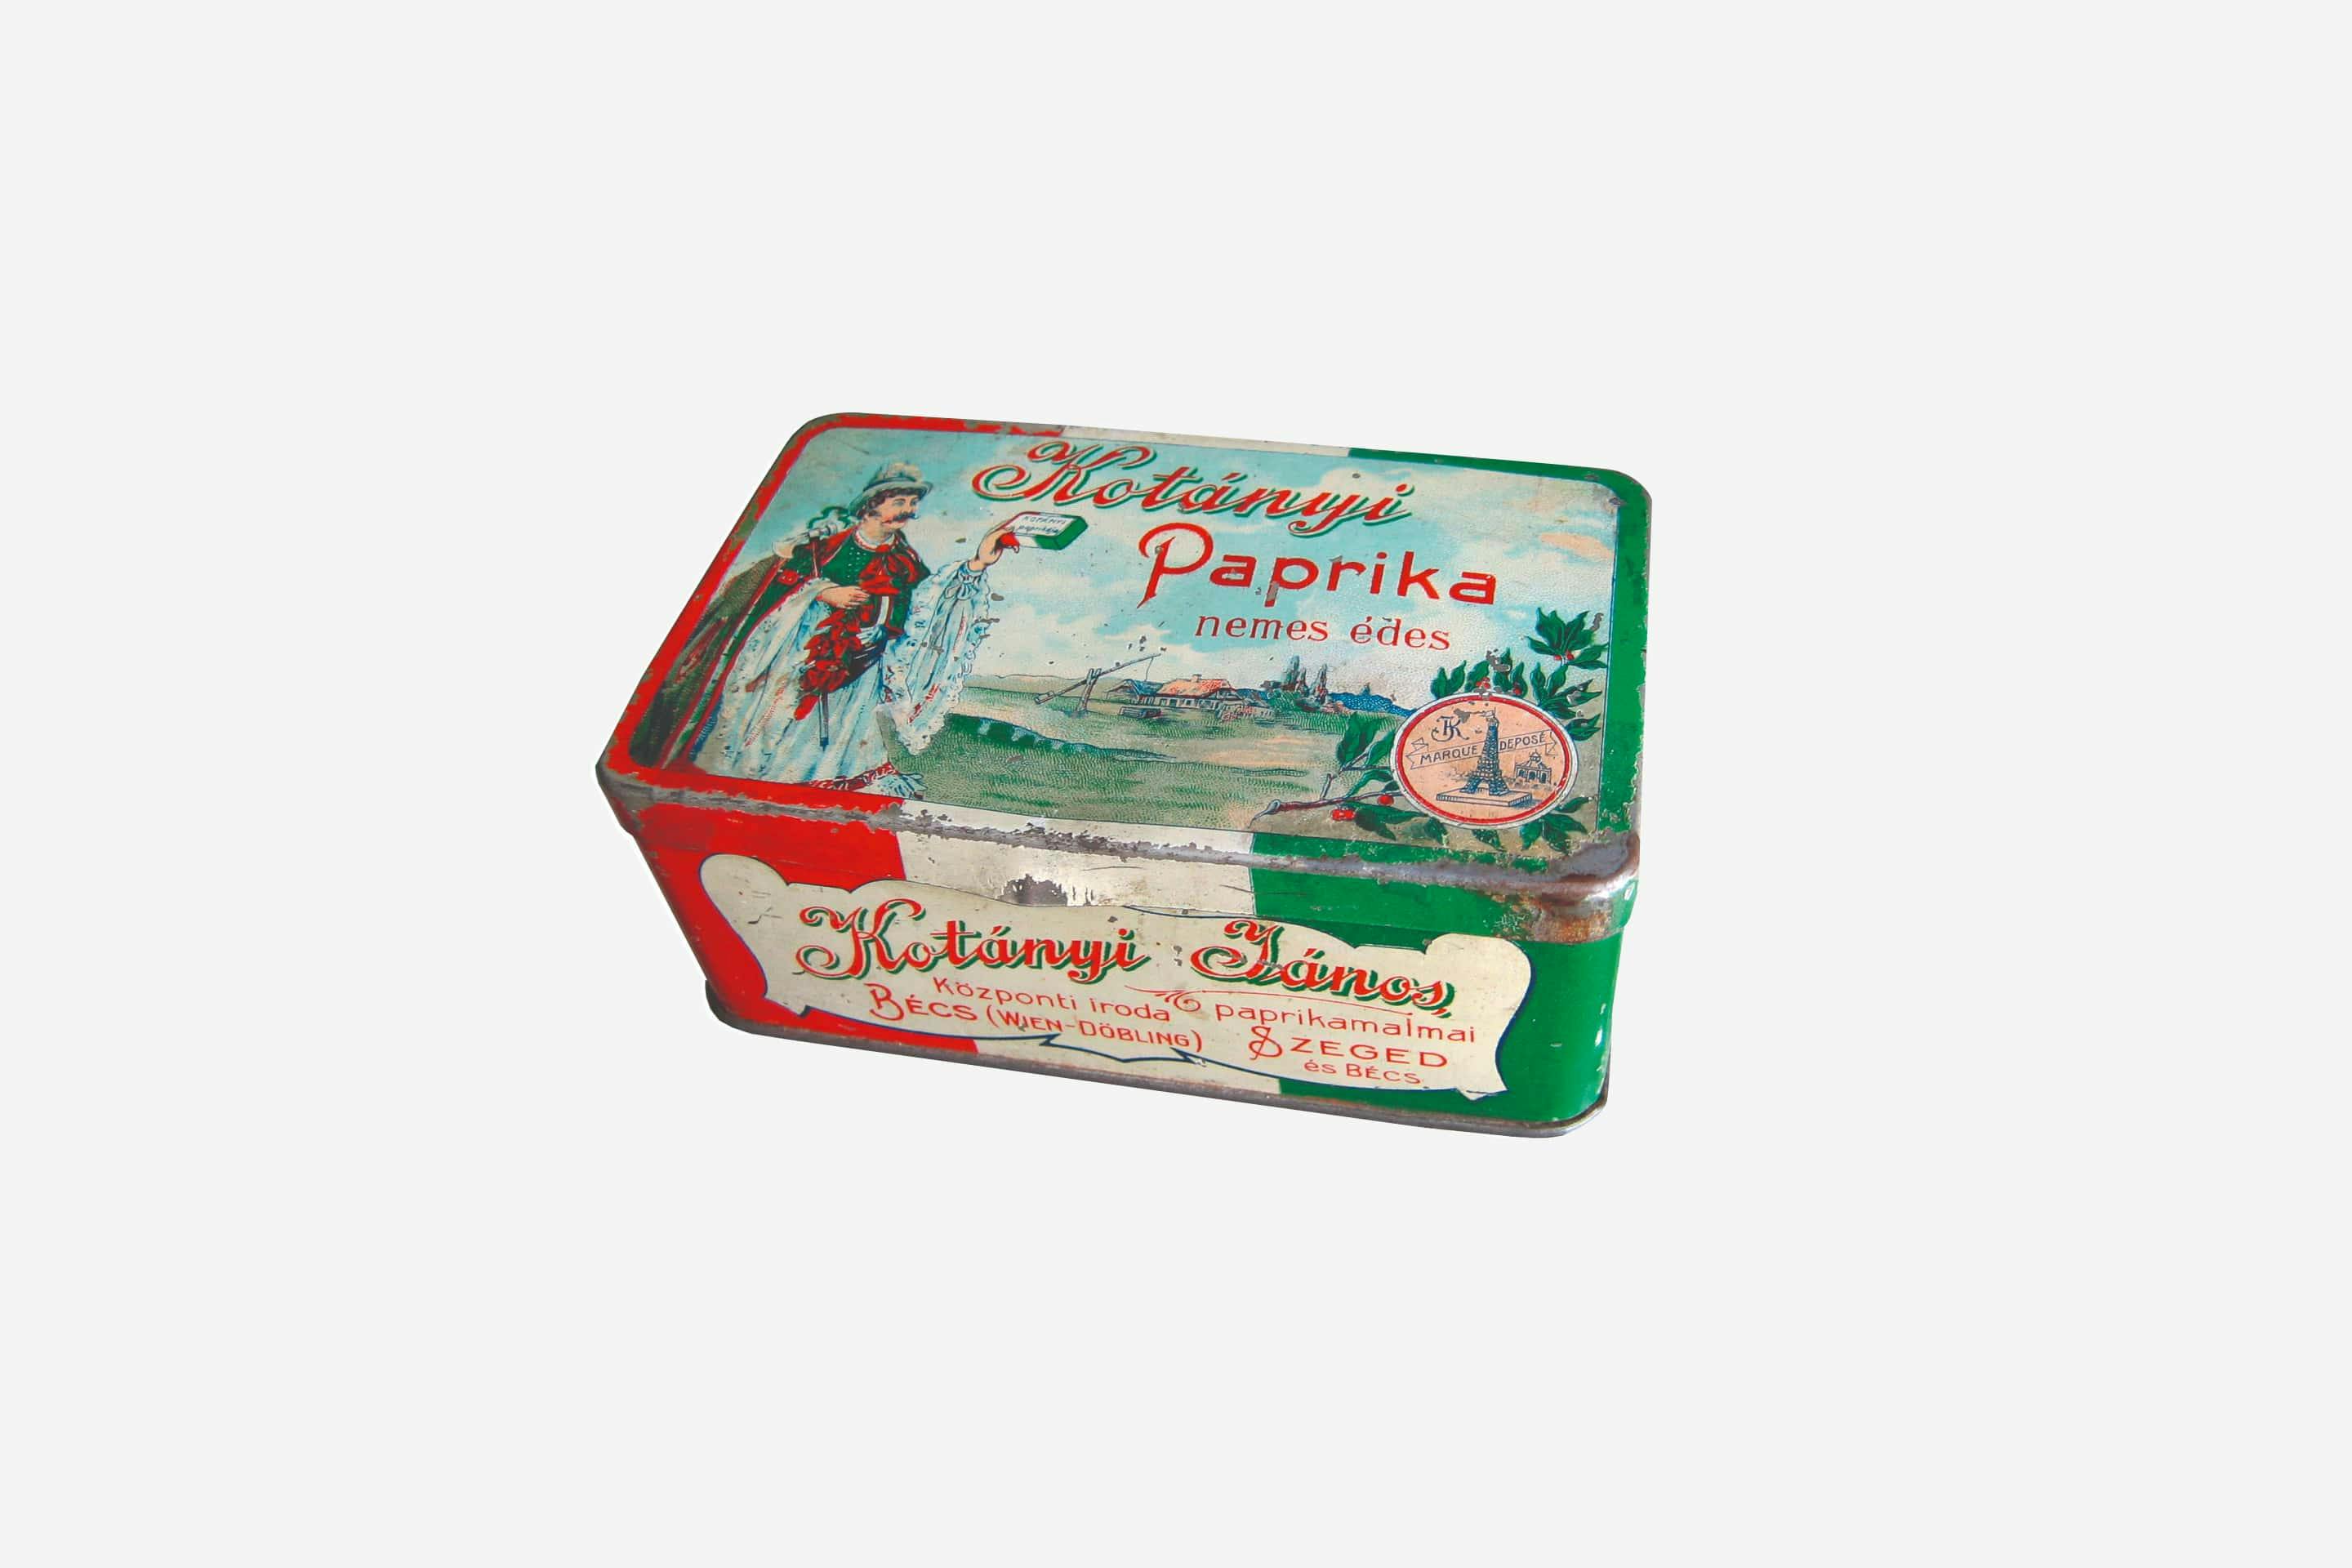 Kotányi fűszerpaprika csomagolása, 1900